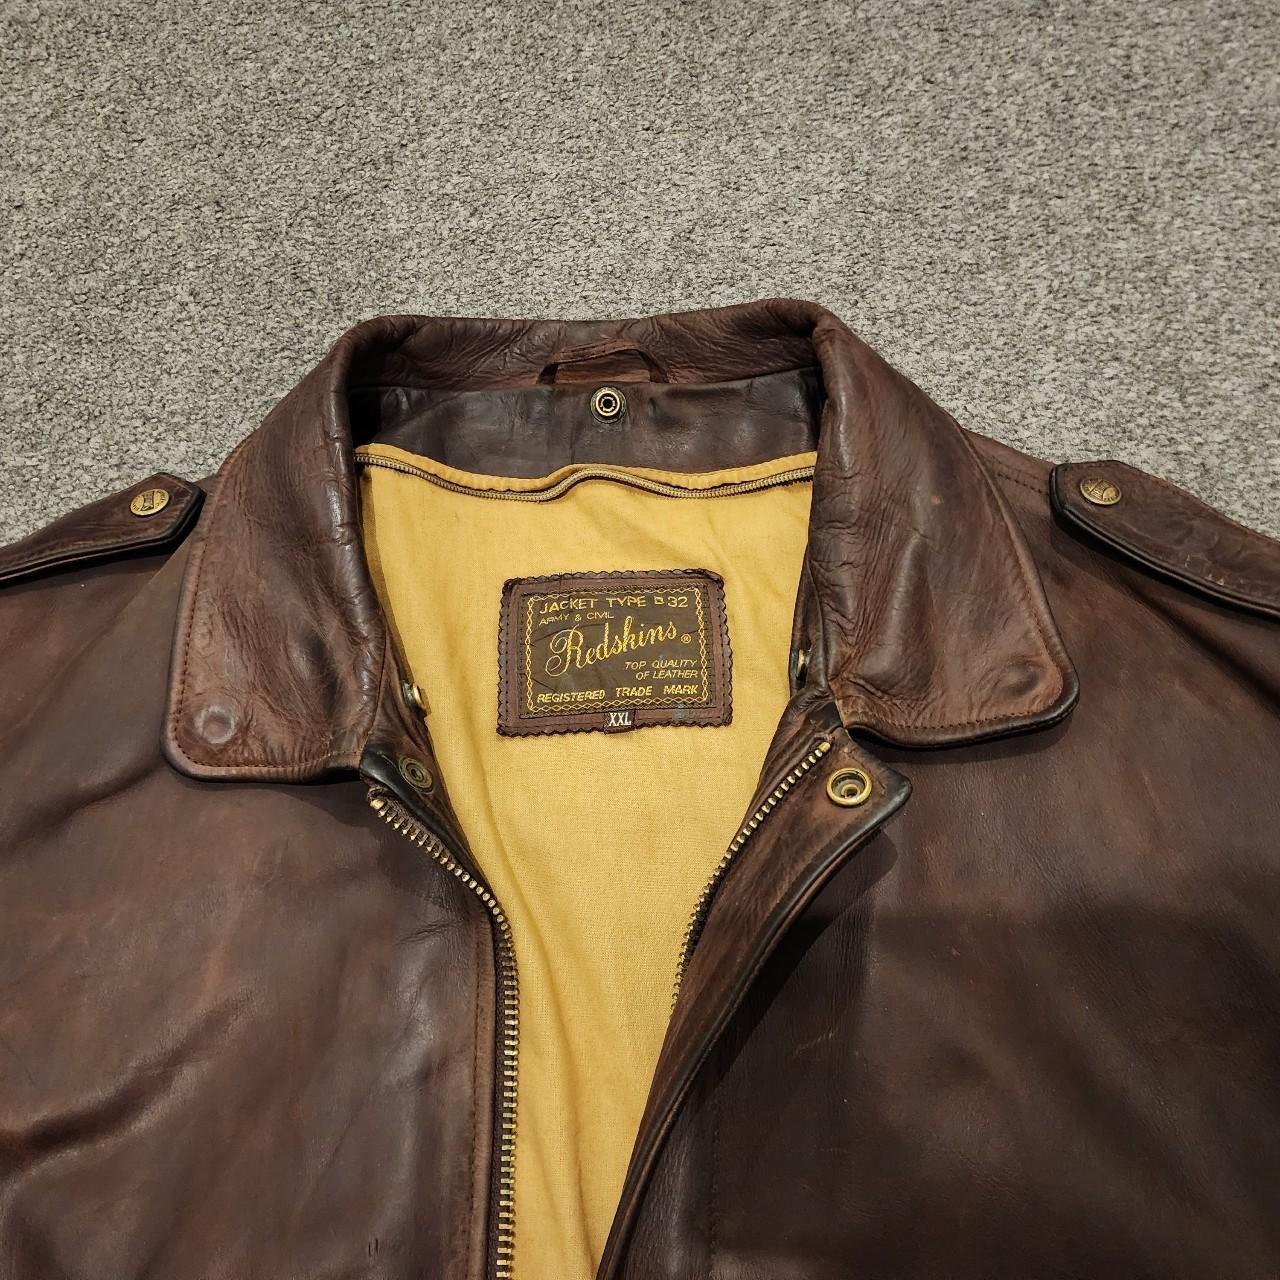 Vintage B32 Redskins brown leather jacket #leather... - Depop